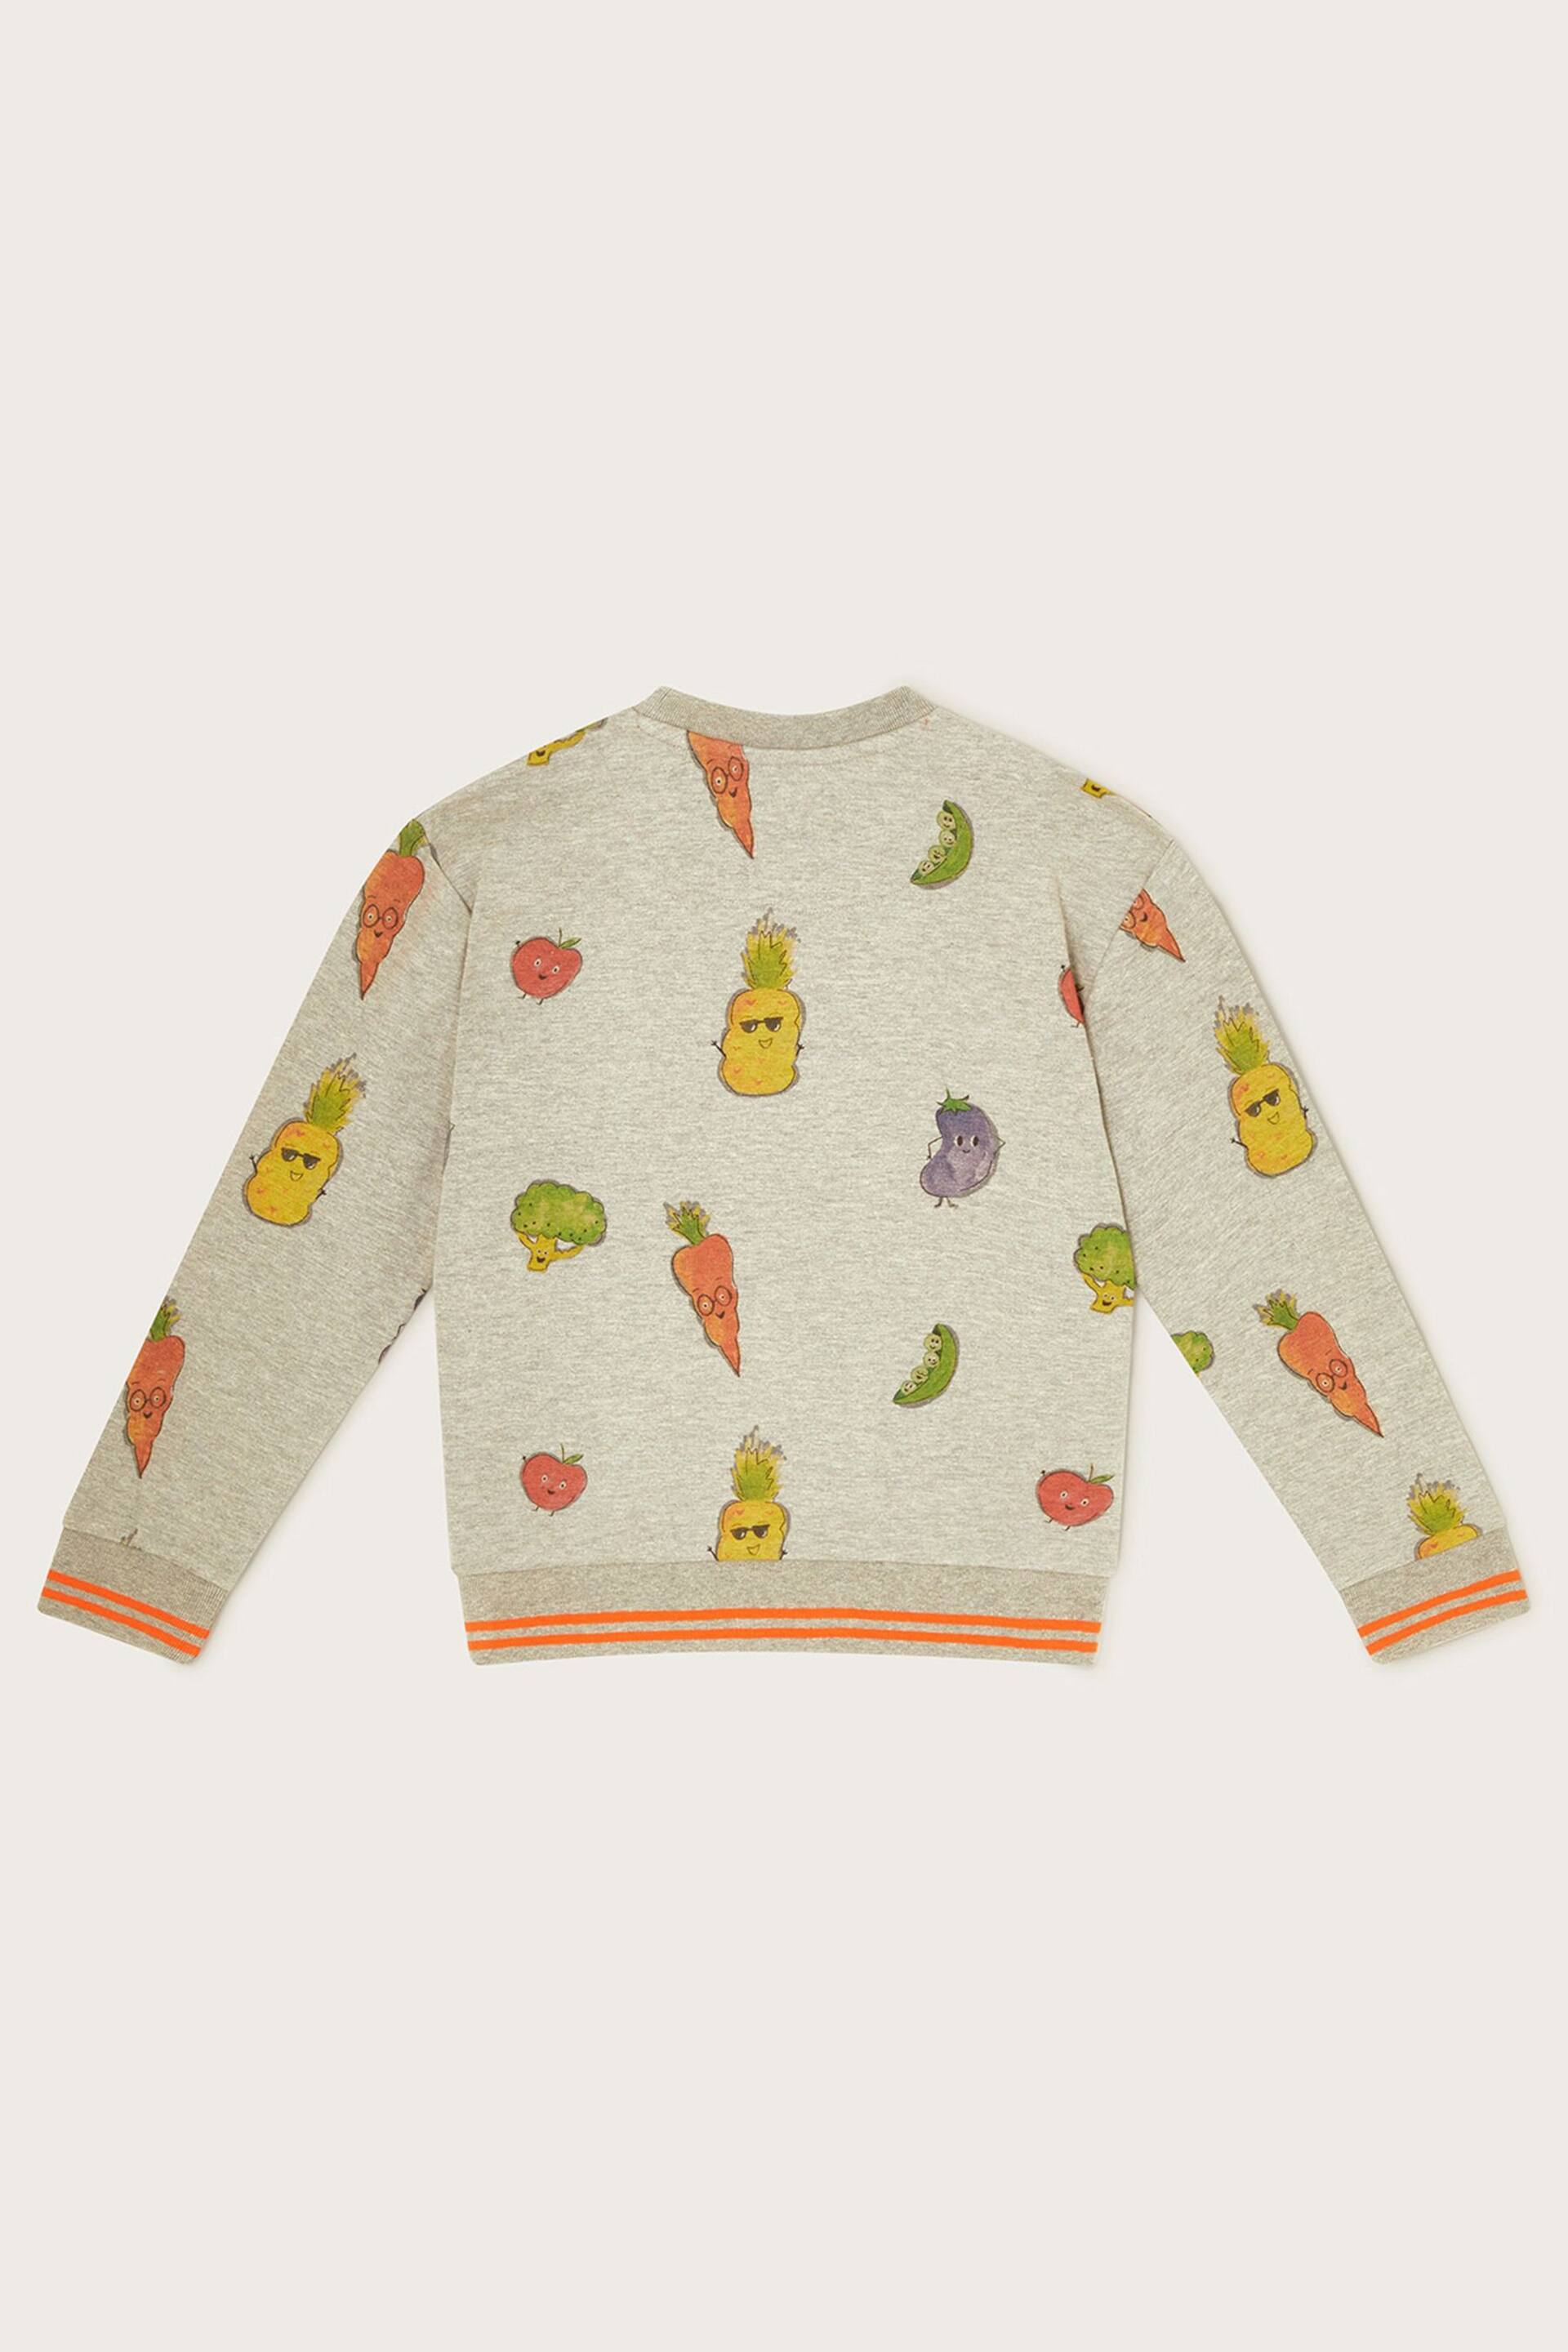 Monsoon Grey Fruit and Vegetable Print Sweatshirt - Image 2 of 3